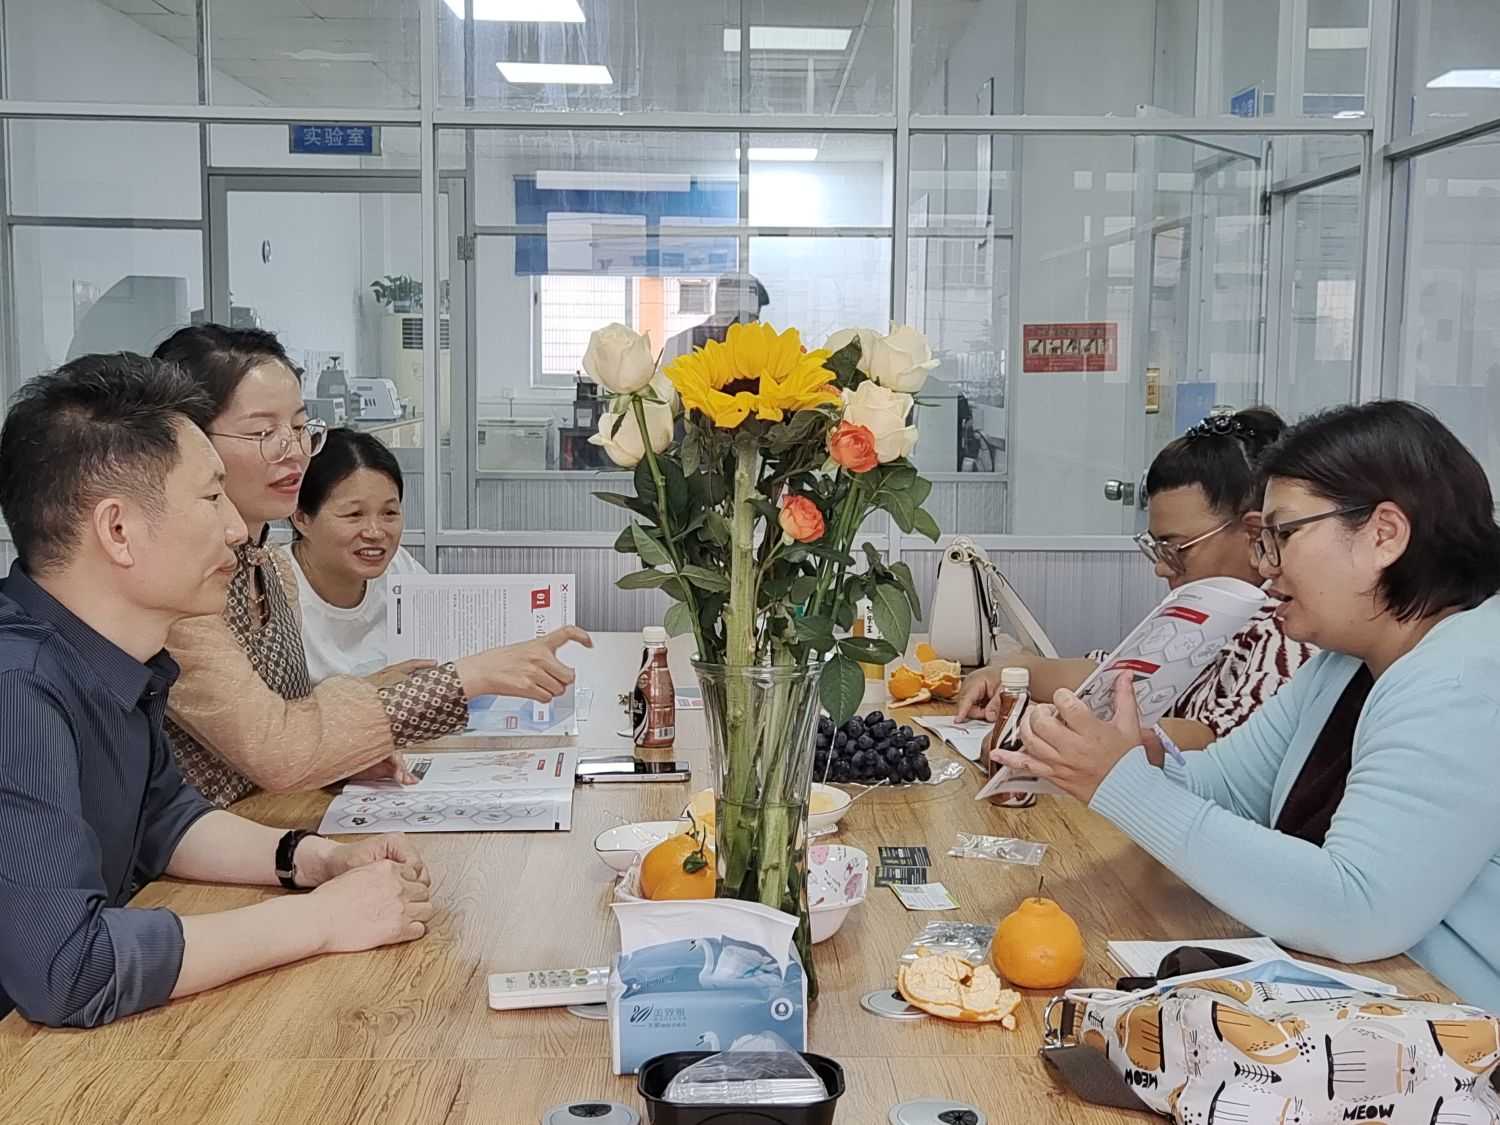 Un cordiale benvenutu à i clienti tailandesi per visità è scambià idee cù Yuhuang Enterprise